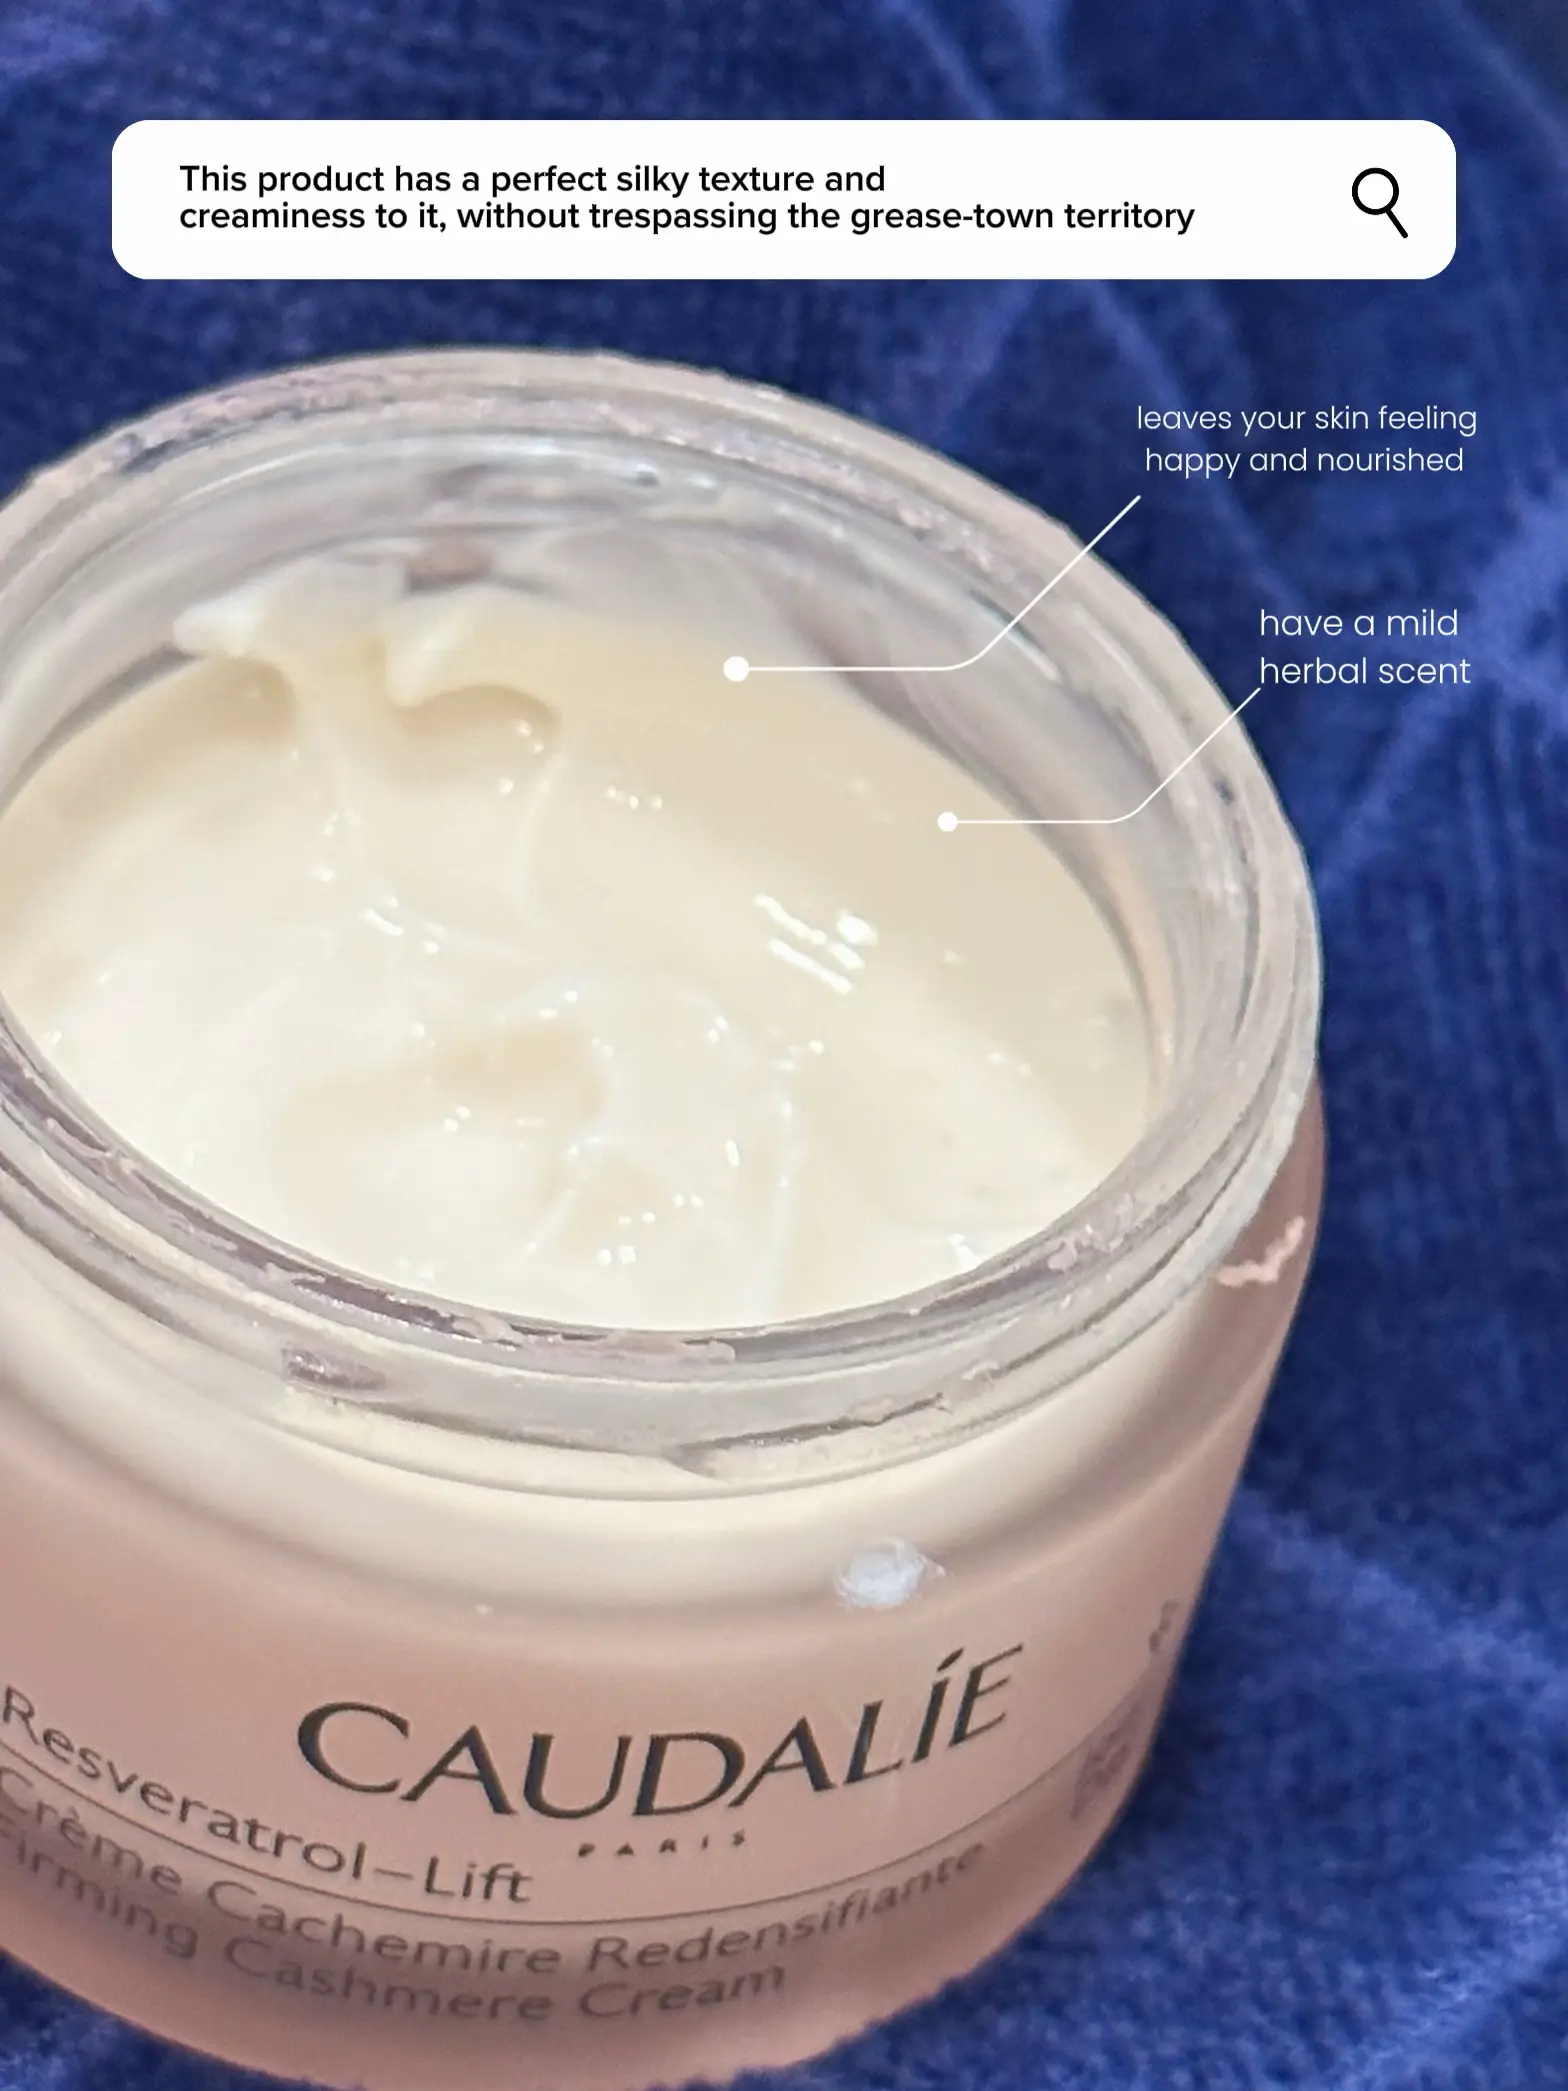 Firming Cashmere Cream Resveratrol-Lift